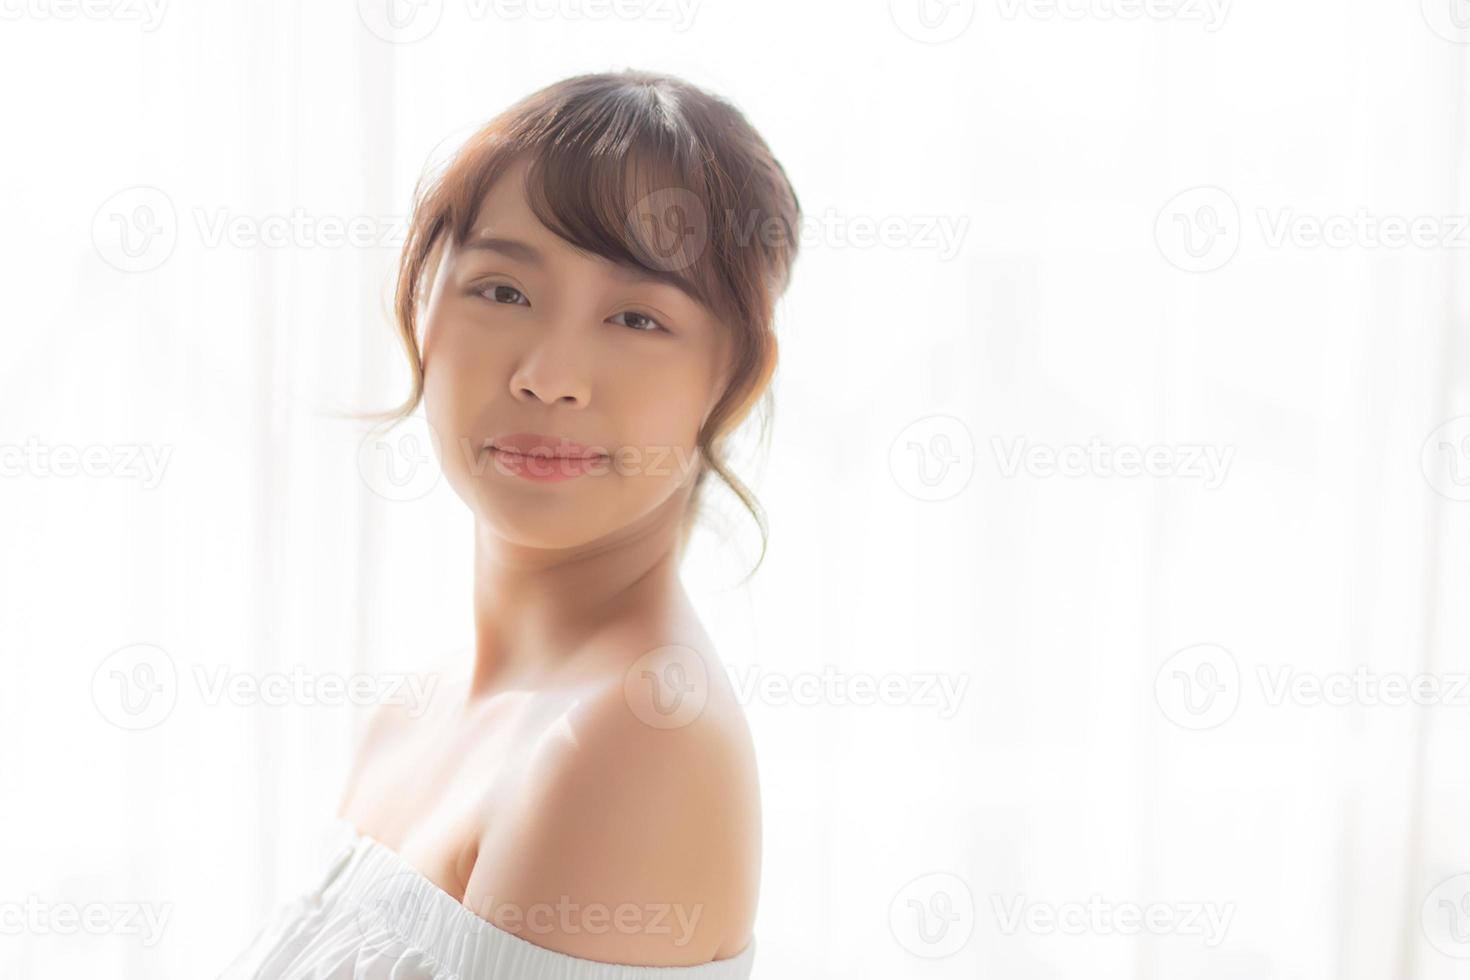 hermoso retrato joven mujer asiática maquillaje de cosmética, sonrisa de niña asiática y atractivo feliz, belleza facial perfecta con cuidado de la piel y atención médica, concepto de bienestar de estilo de vida. foto